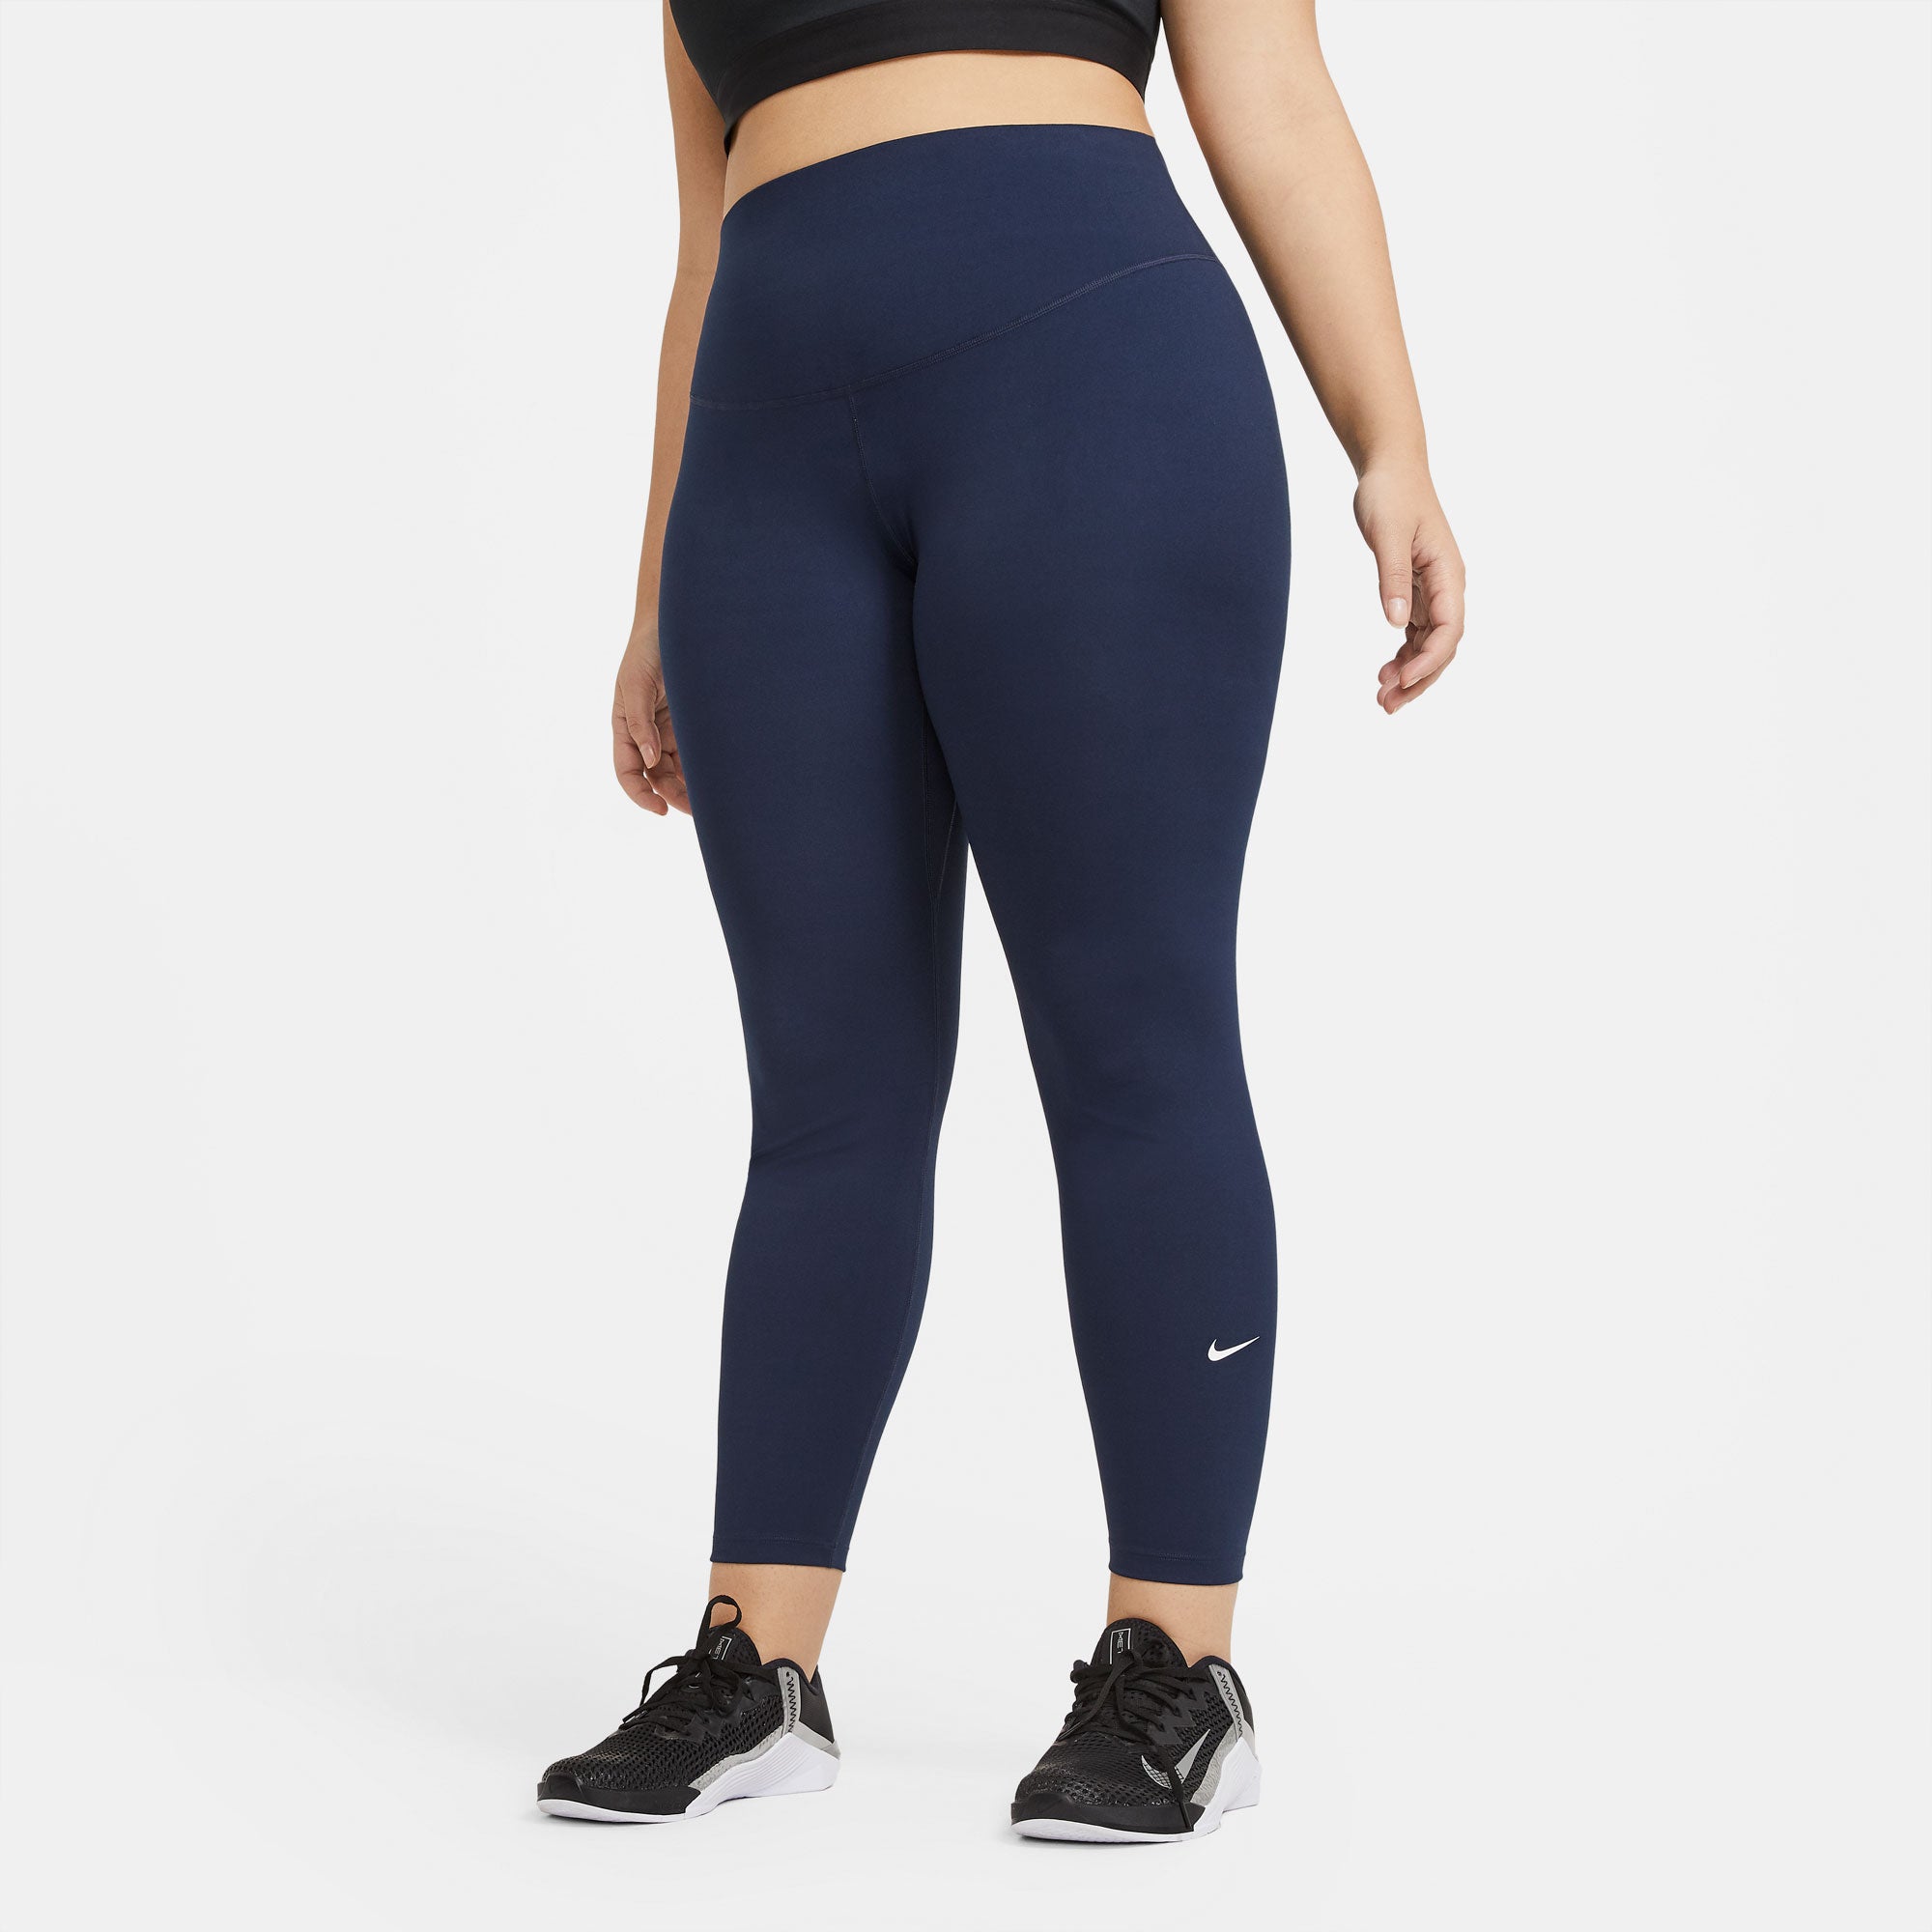 Nike One Dri-FIT Women's Mid-Rise Tights - Dark Blue